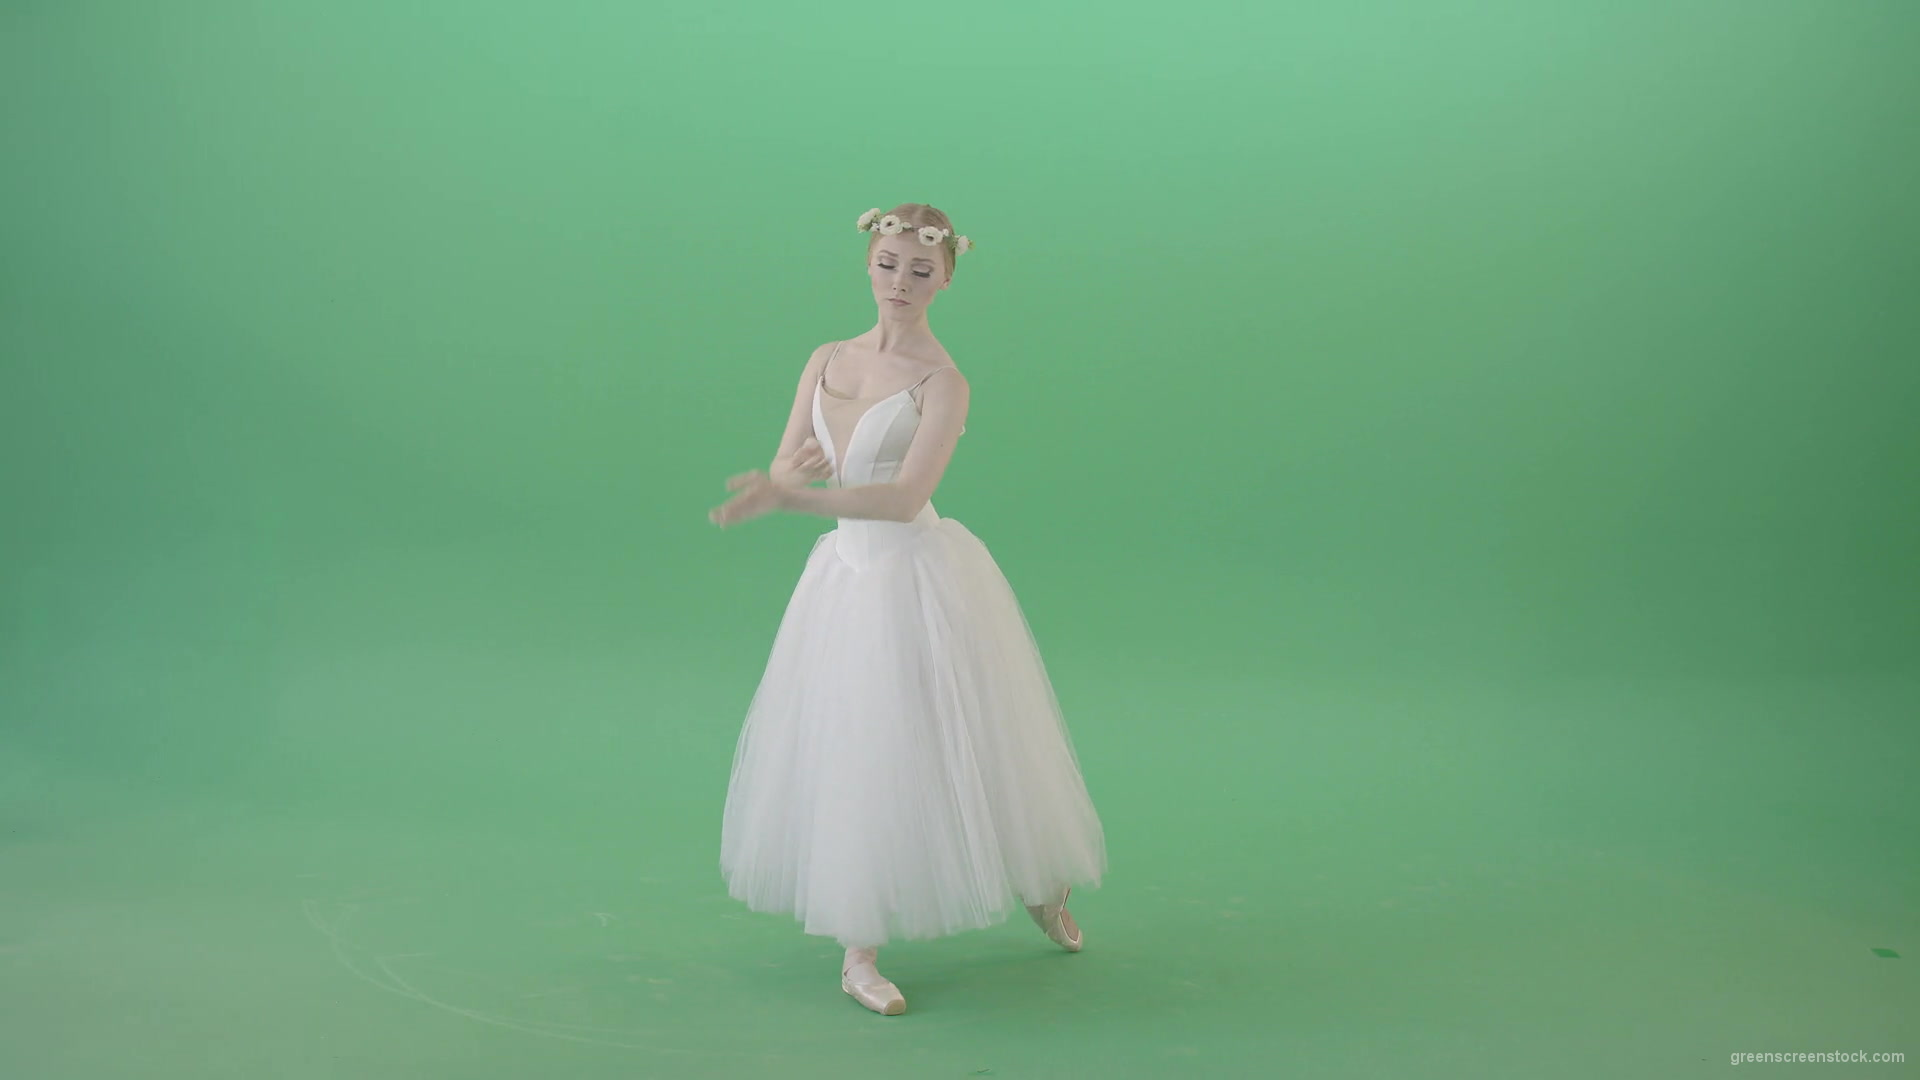 Elegant-Ballerina-Ballet-Girl-posing-for-Advertising-packshot-4K-Video-Footage-1920_008 Green Screen Stock